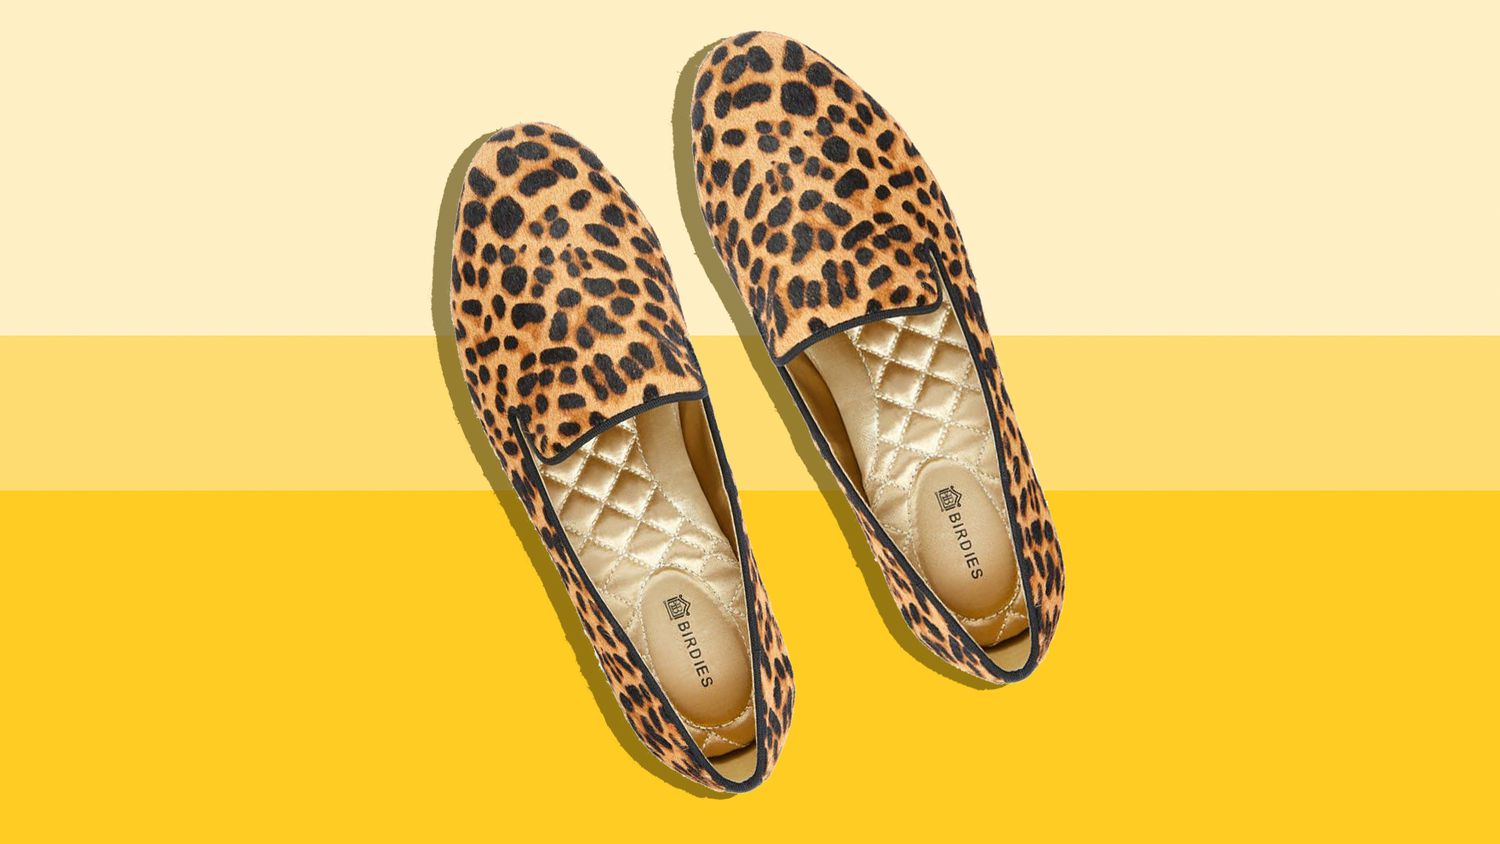 The Starling Cheetah Calf Hair birdies shoes